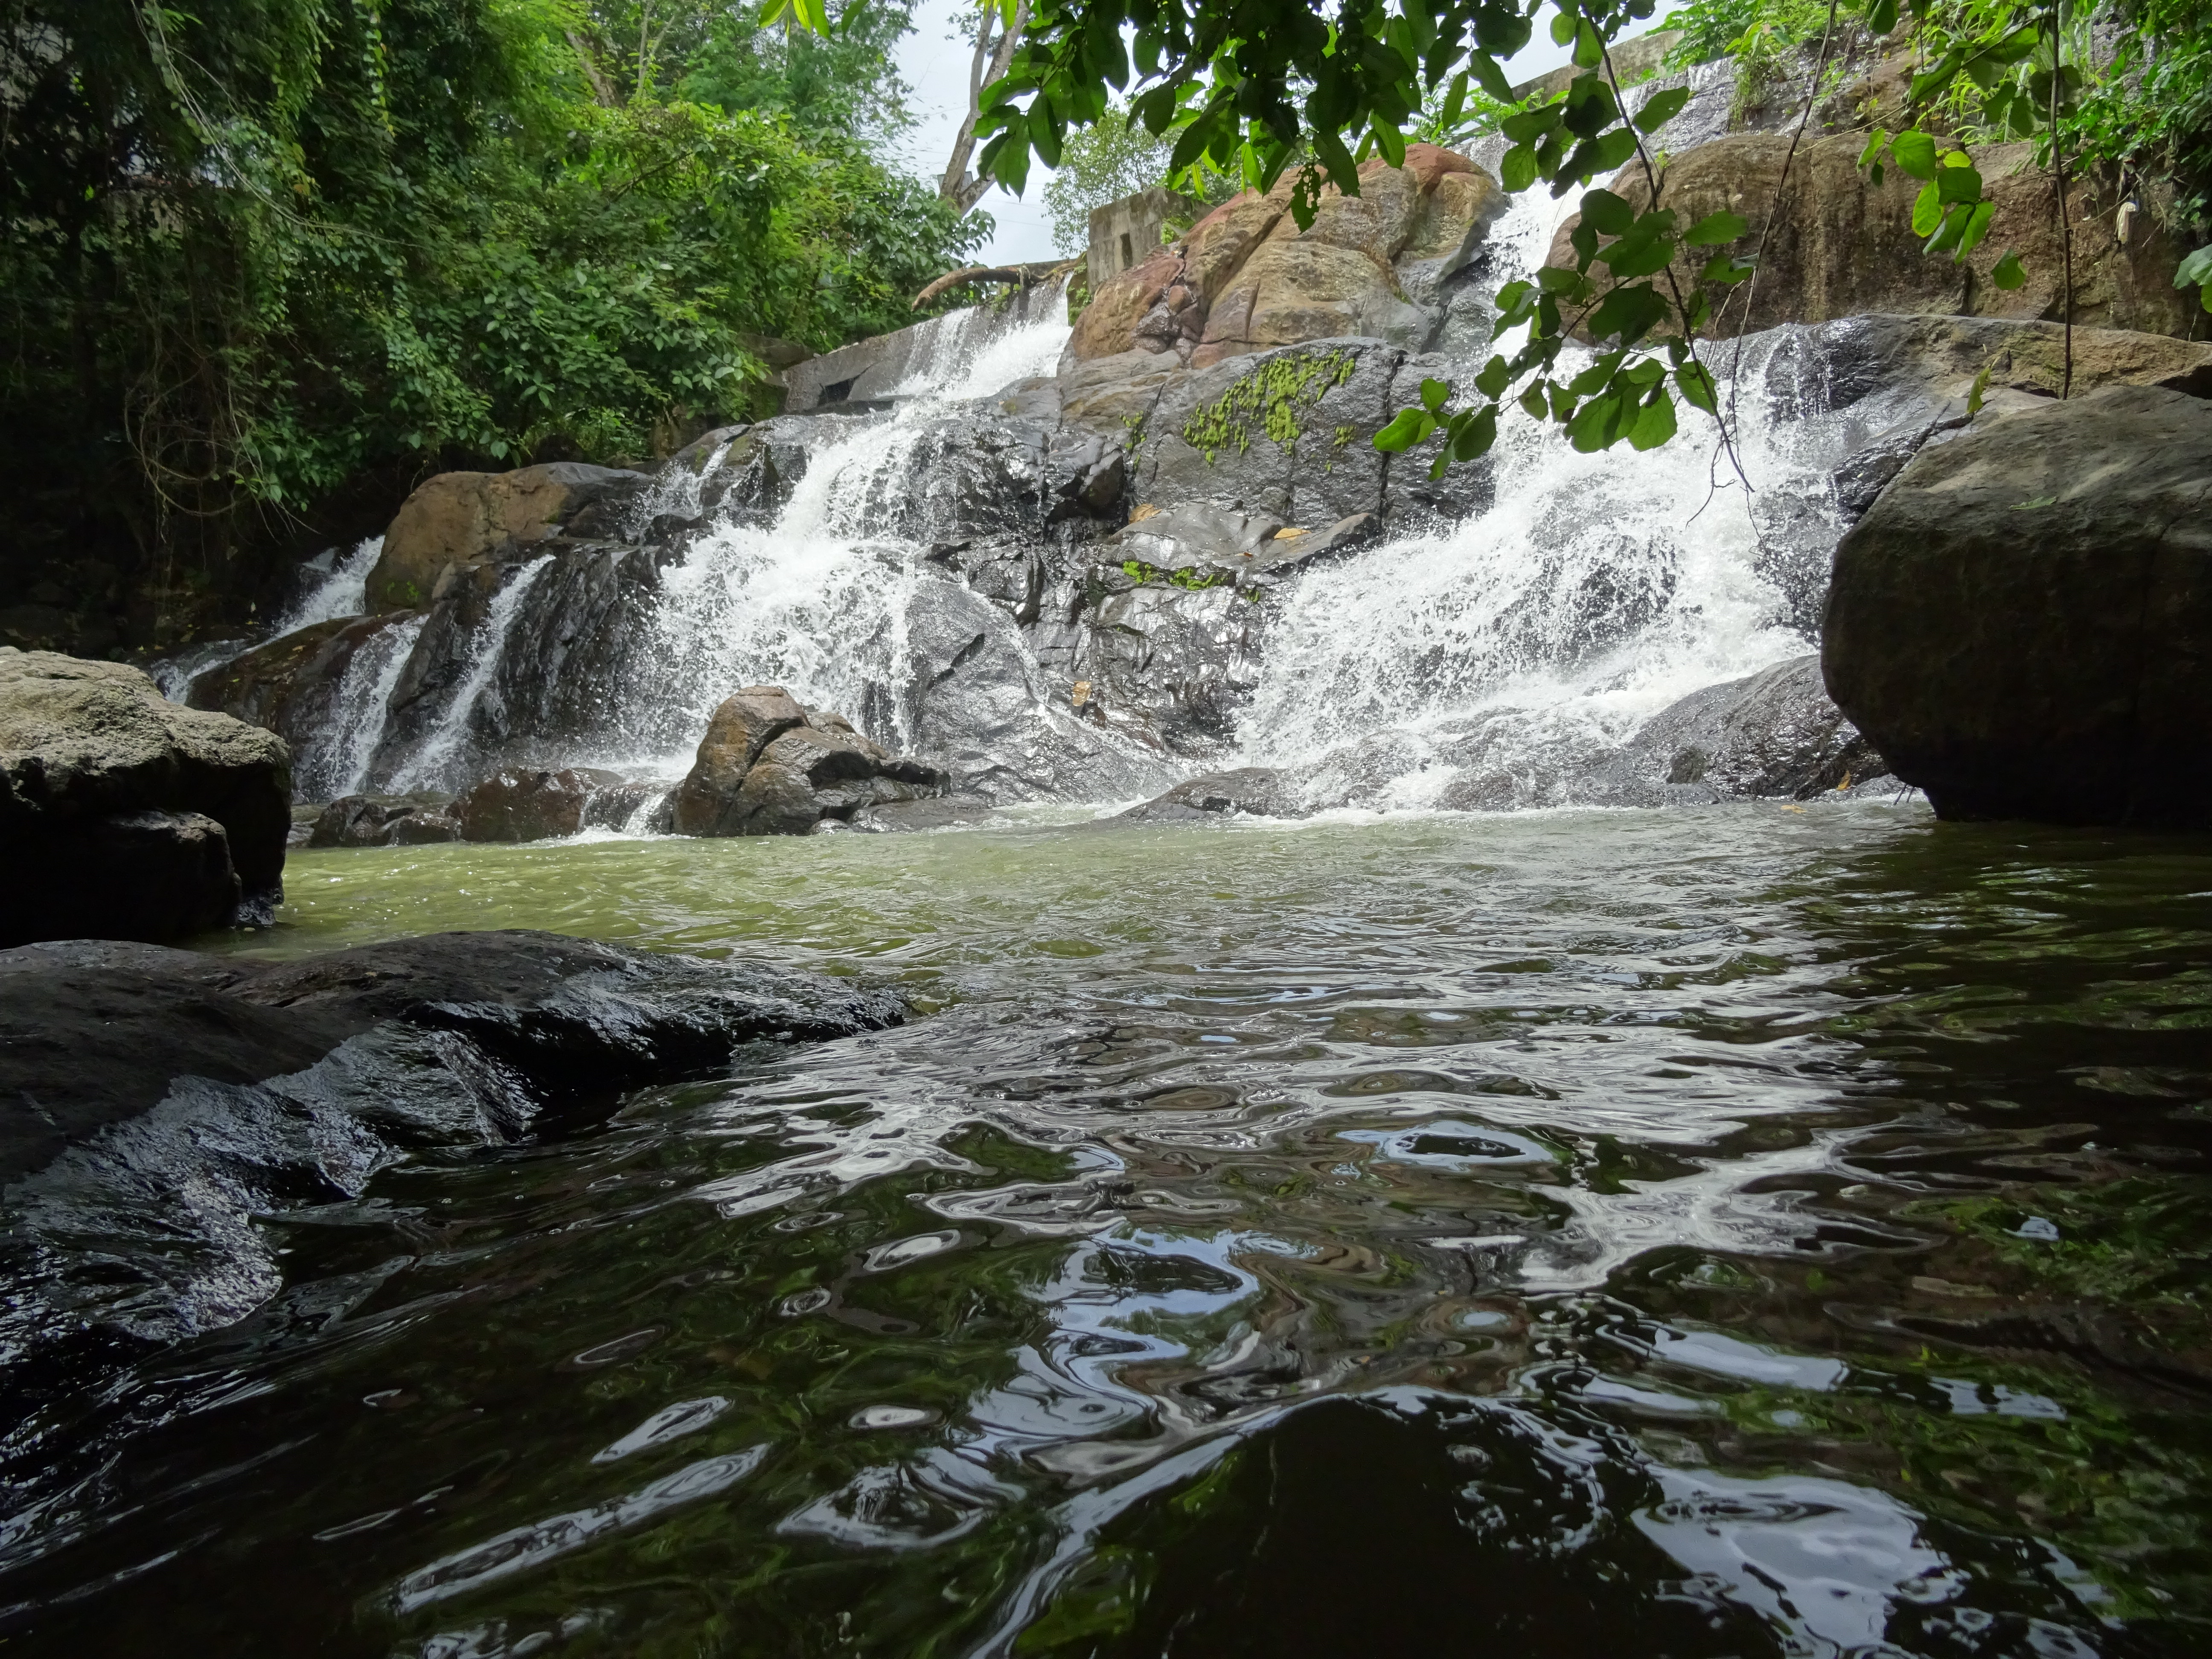 Aruvikkuzhi Waterfalls, Kottayam